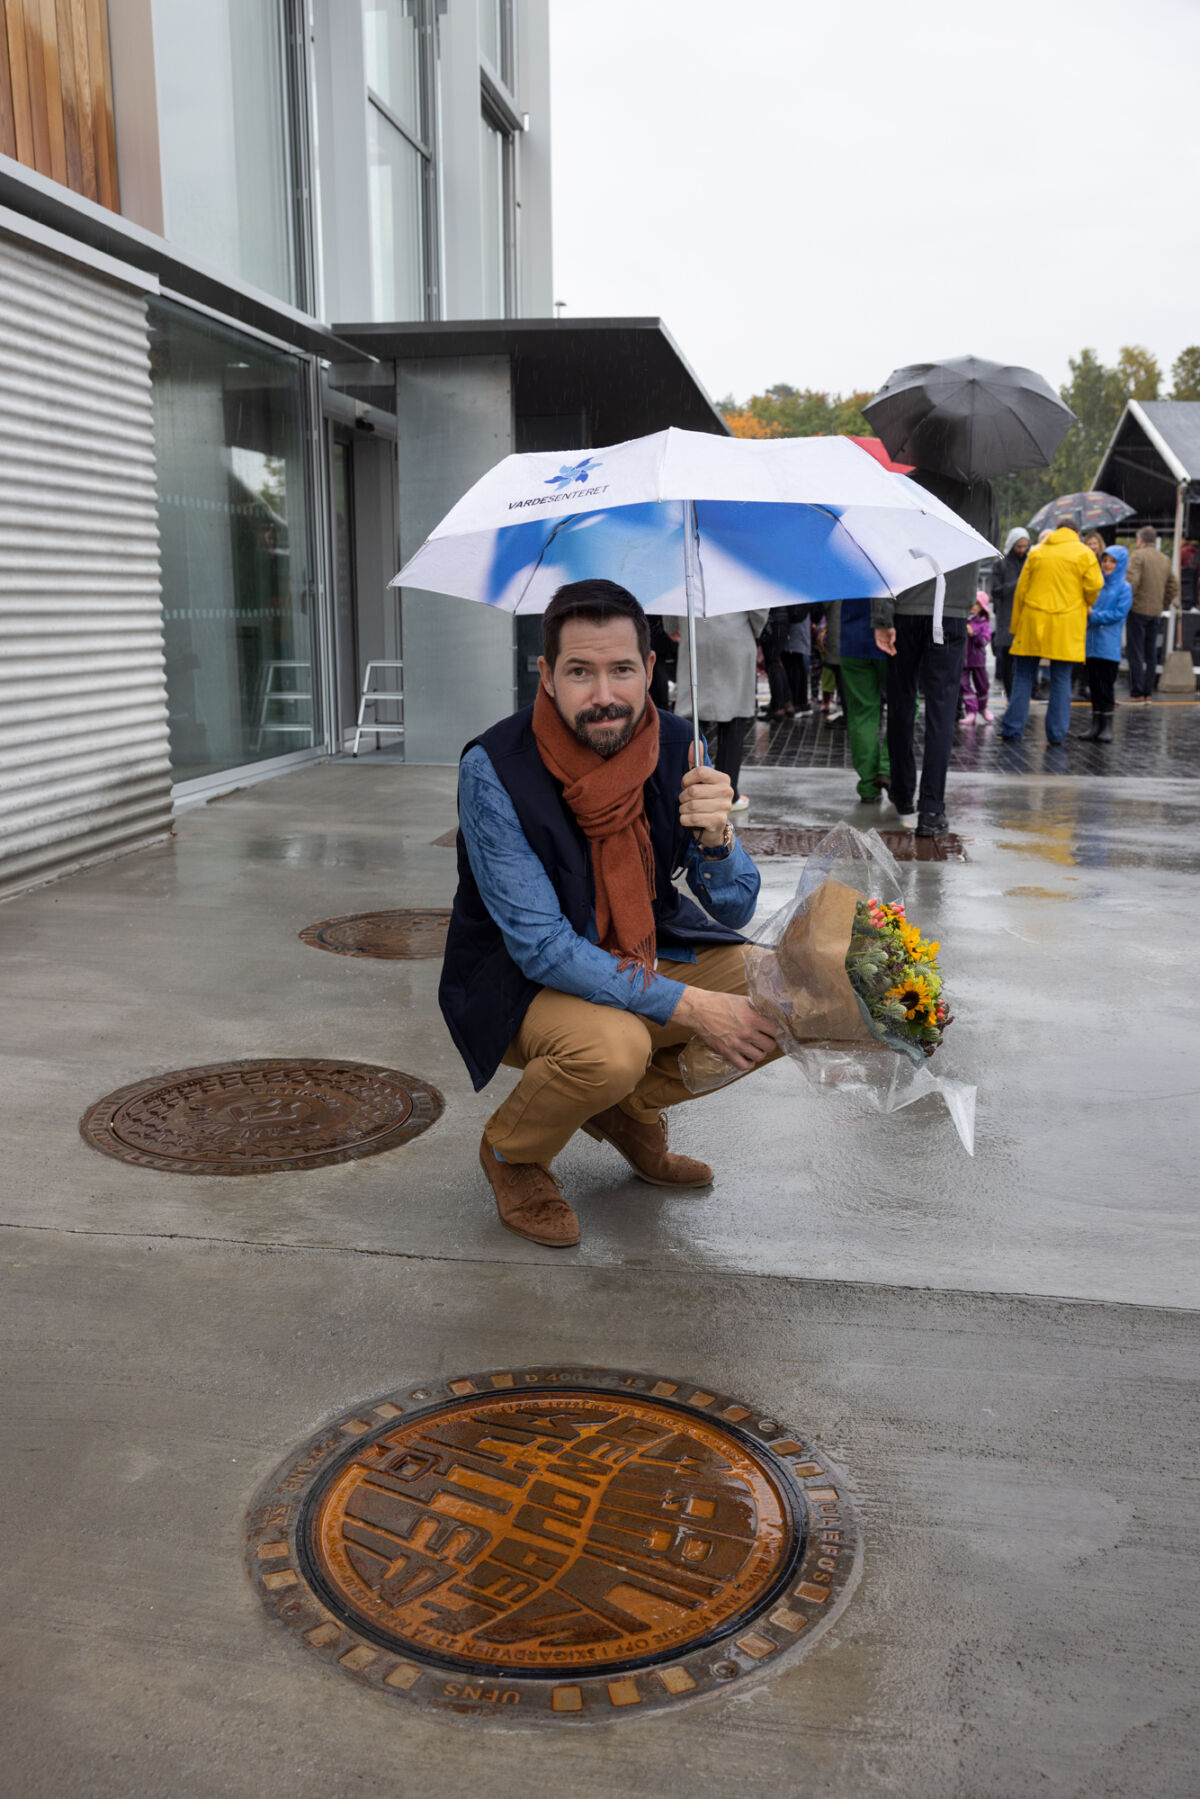 Kunstner Bjørn-Kowalski Hansen med en bukett solsikker ved kunstverk utført på kommelokk. Foto